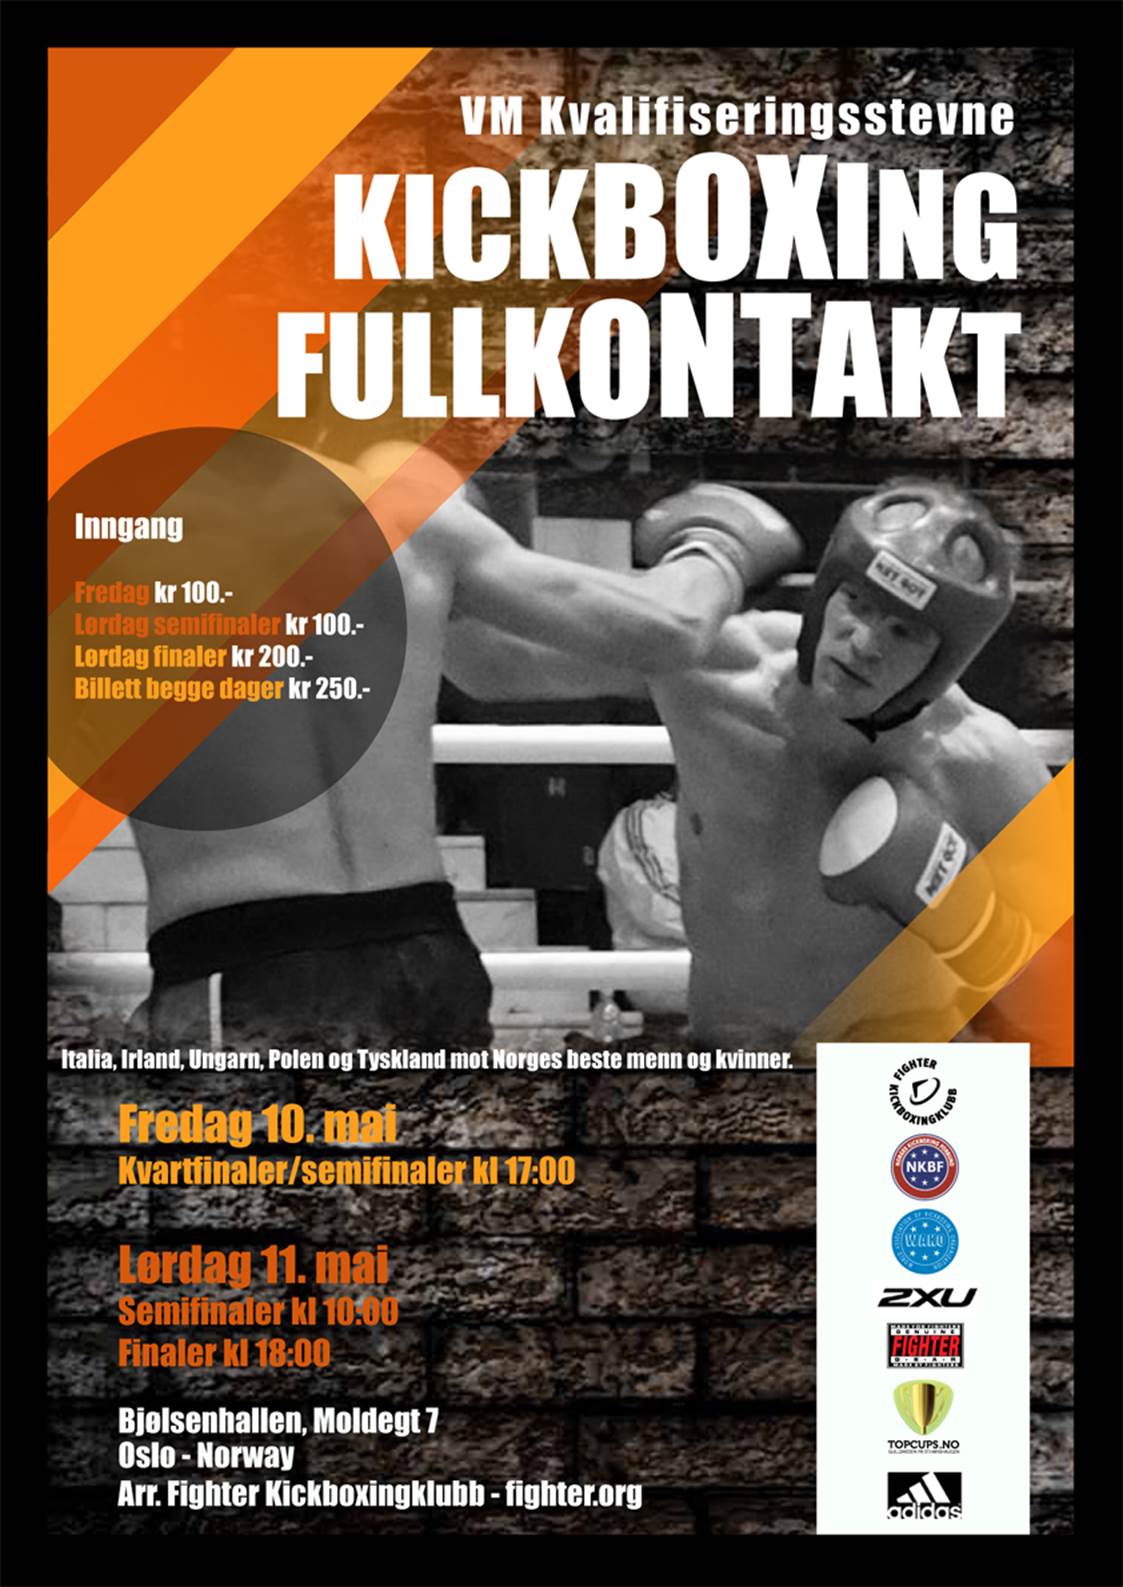 Khysein stiller til VM kvalifiseringsstevne i fullkontakt kickboxing 10-11 mai Bjølsenhallen i Oslo.